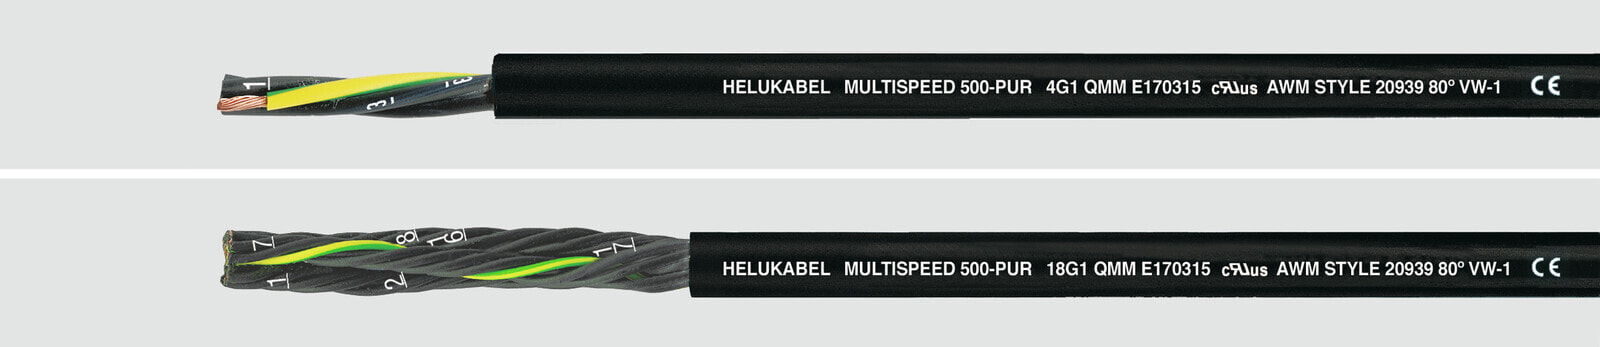 Helukabel 24395 - Low voltage cable - Black - Cooper - 1.5 mm² - 58 kg/km - -30 - 80 °C